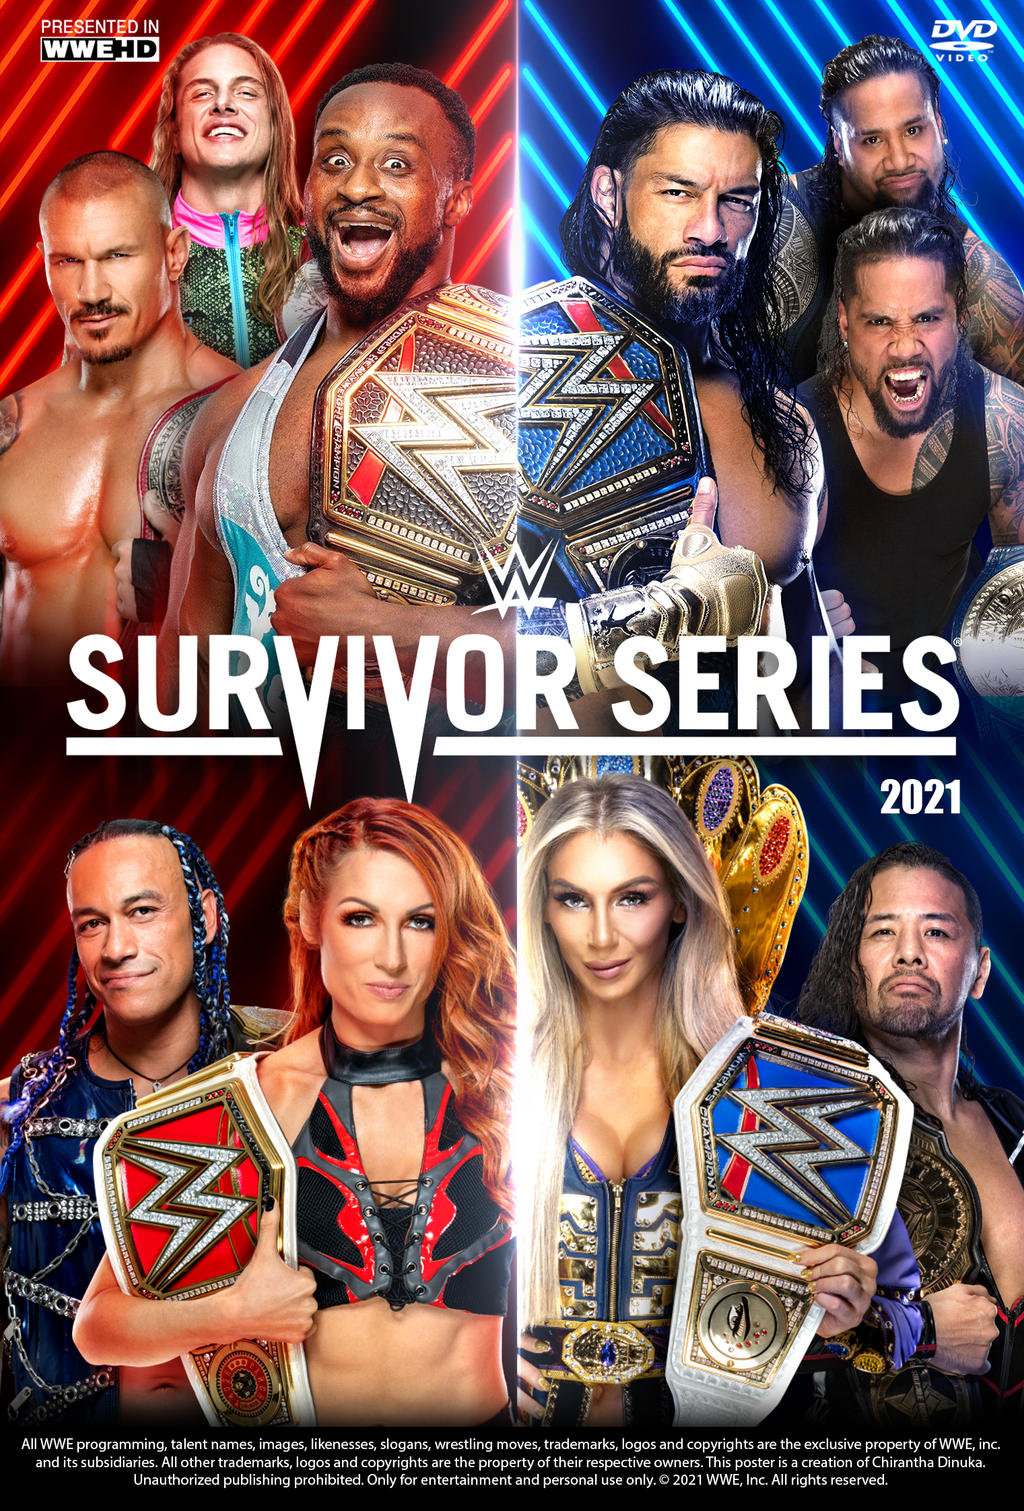 Survivor series 2021